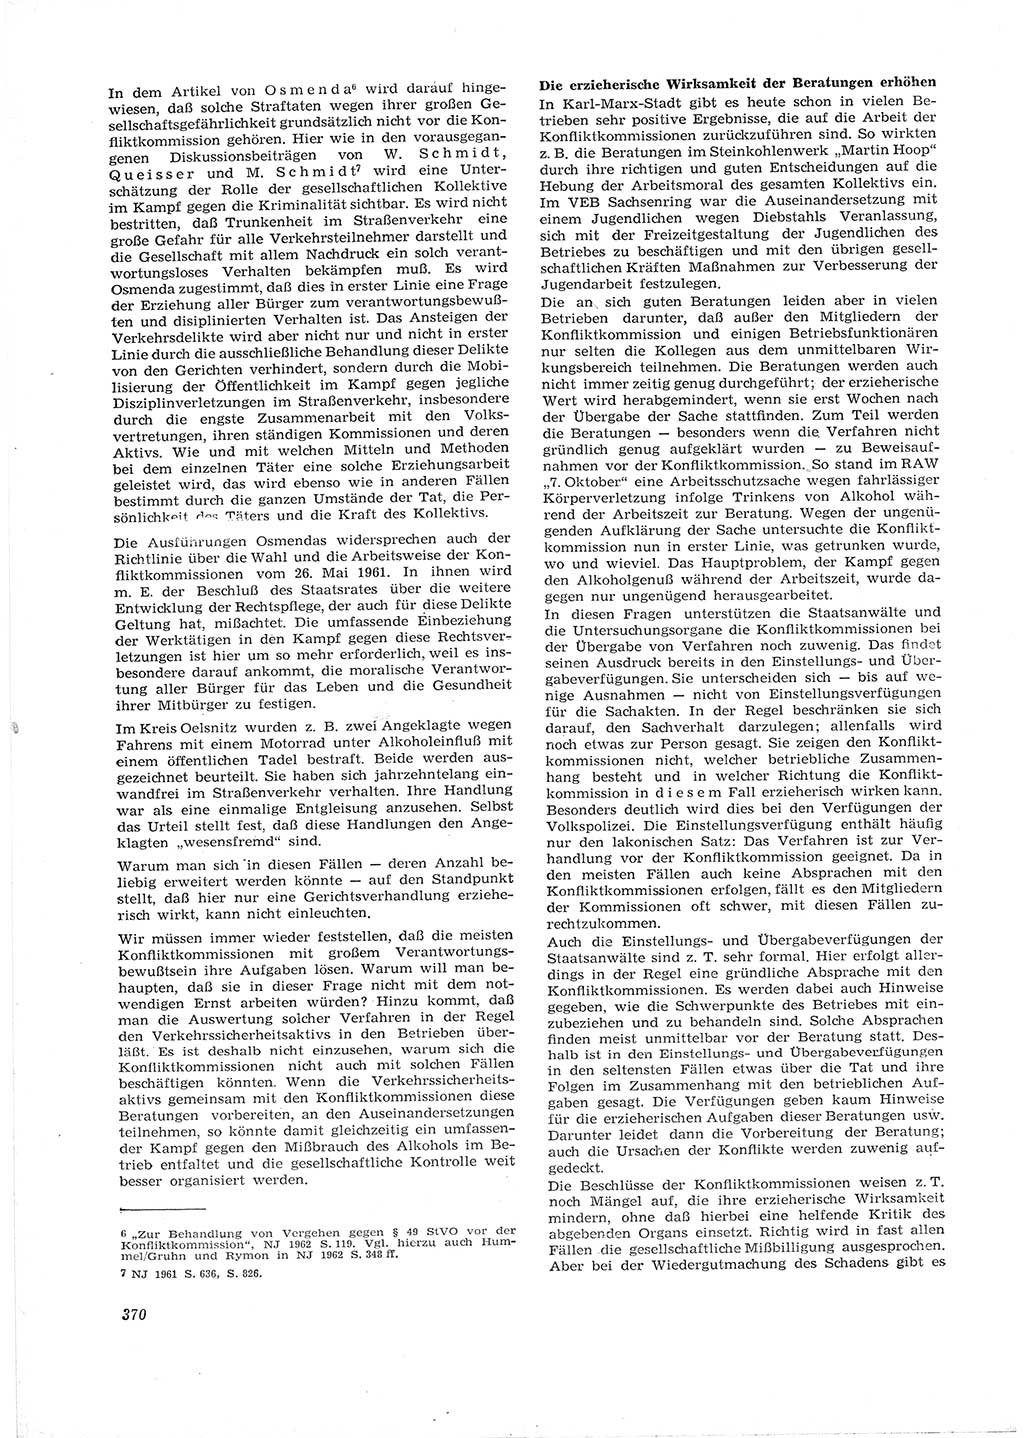 Neue Justiz (NJ), Zeitschrift für Recht und Rechtswissenschaft [Deutsche Demokratische Republik (DDR)], 16. Jahrgang 1962, Seite 370 (NJ DDR 1962, S. 370)